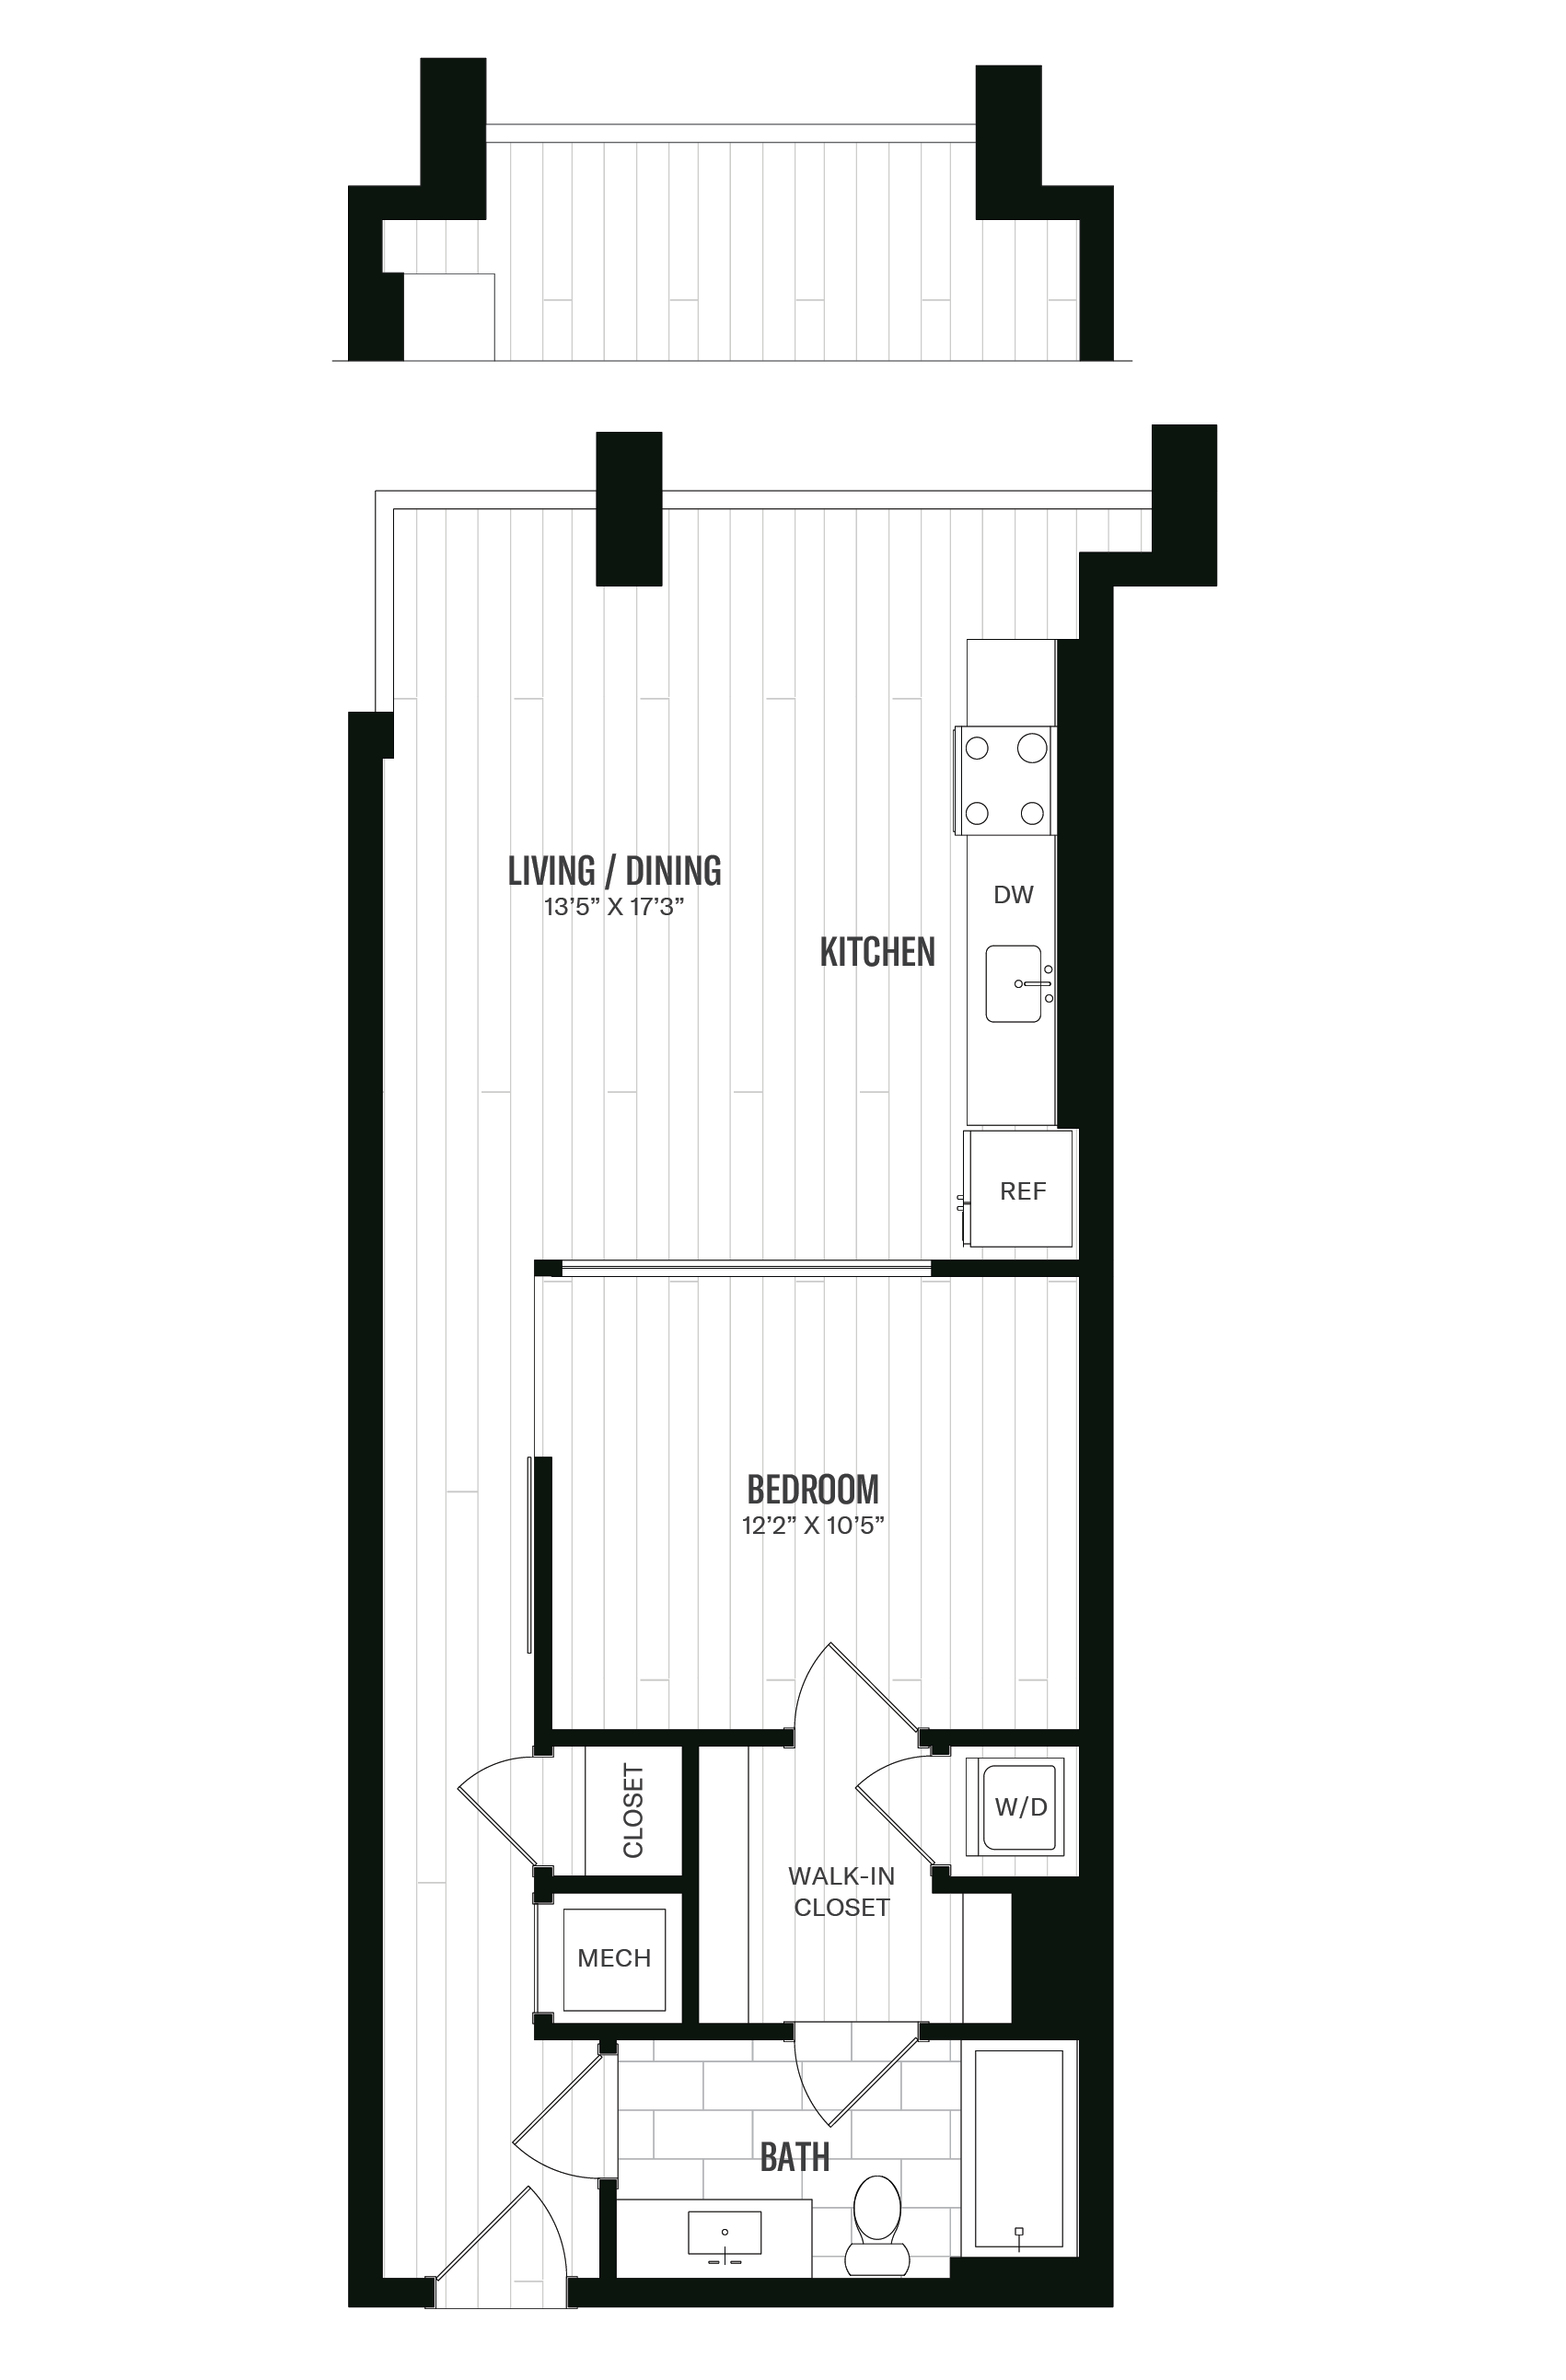 Floorplan image of unit 440